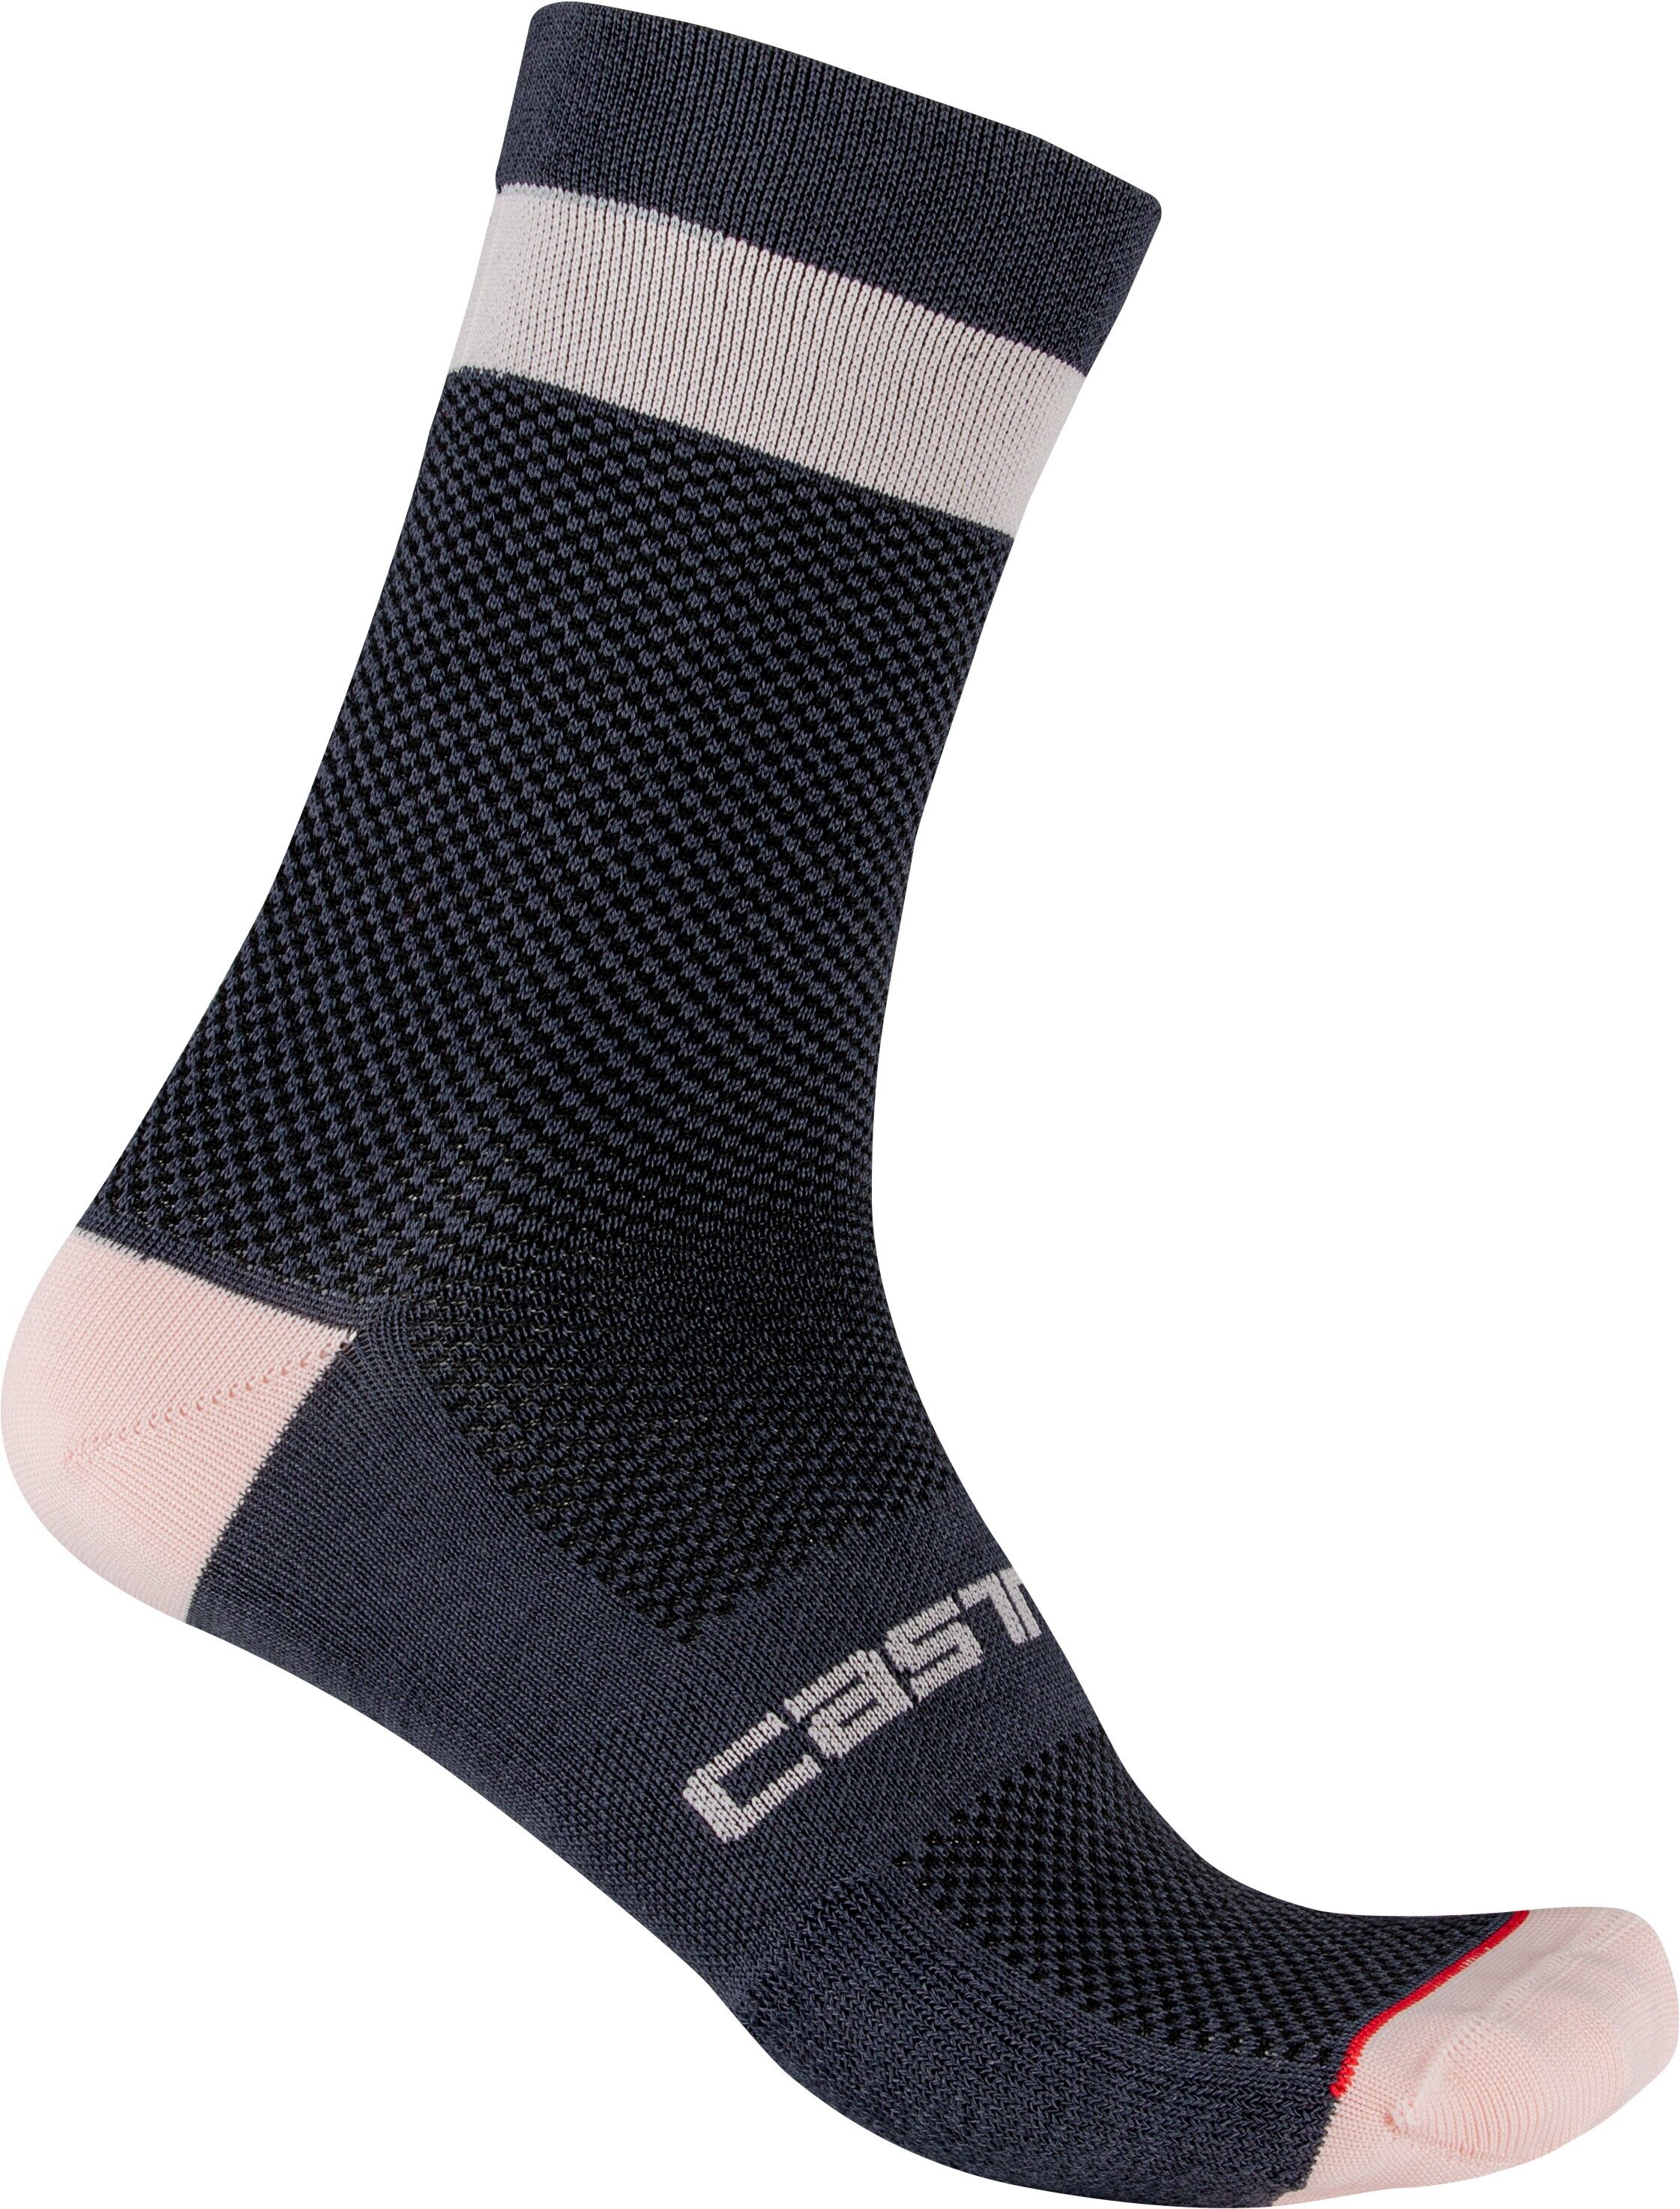 Castelli Alpha W 15 Sock - Cycling socks - Women's